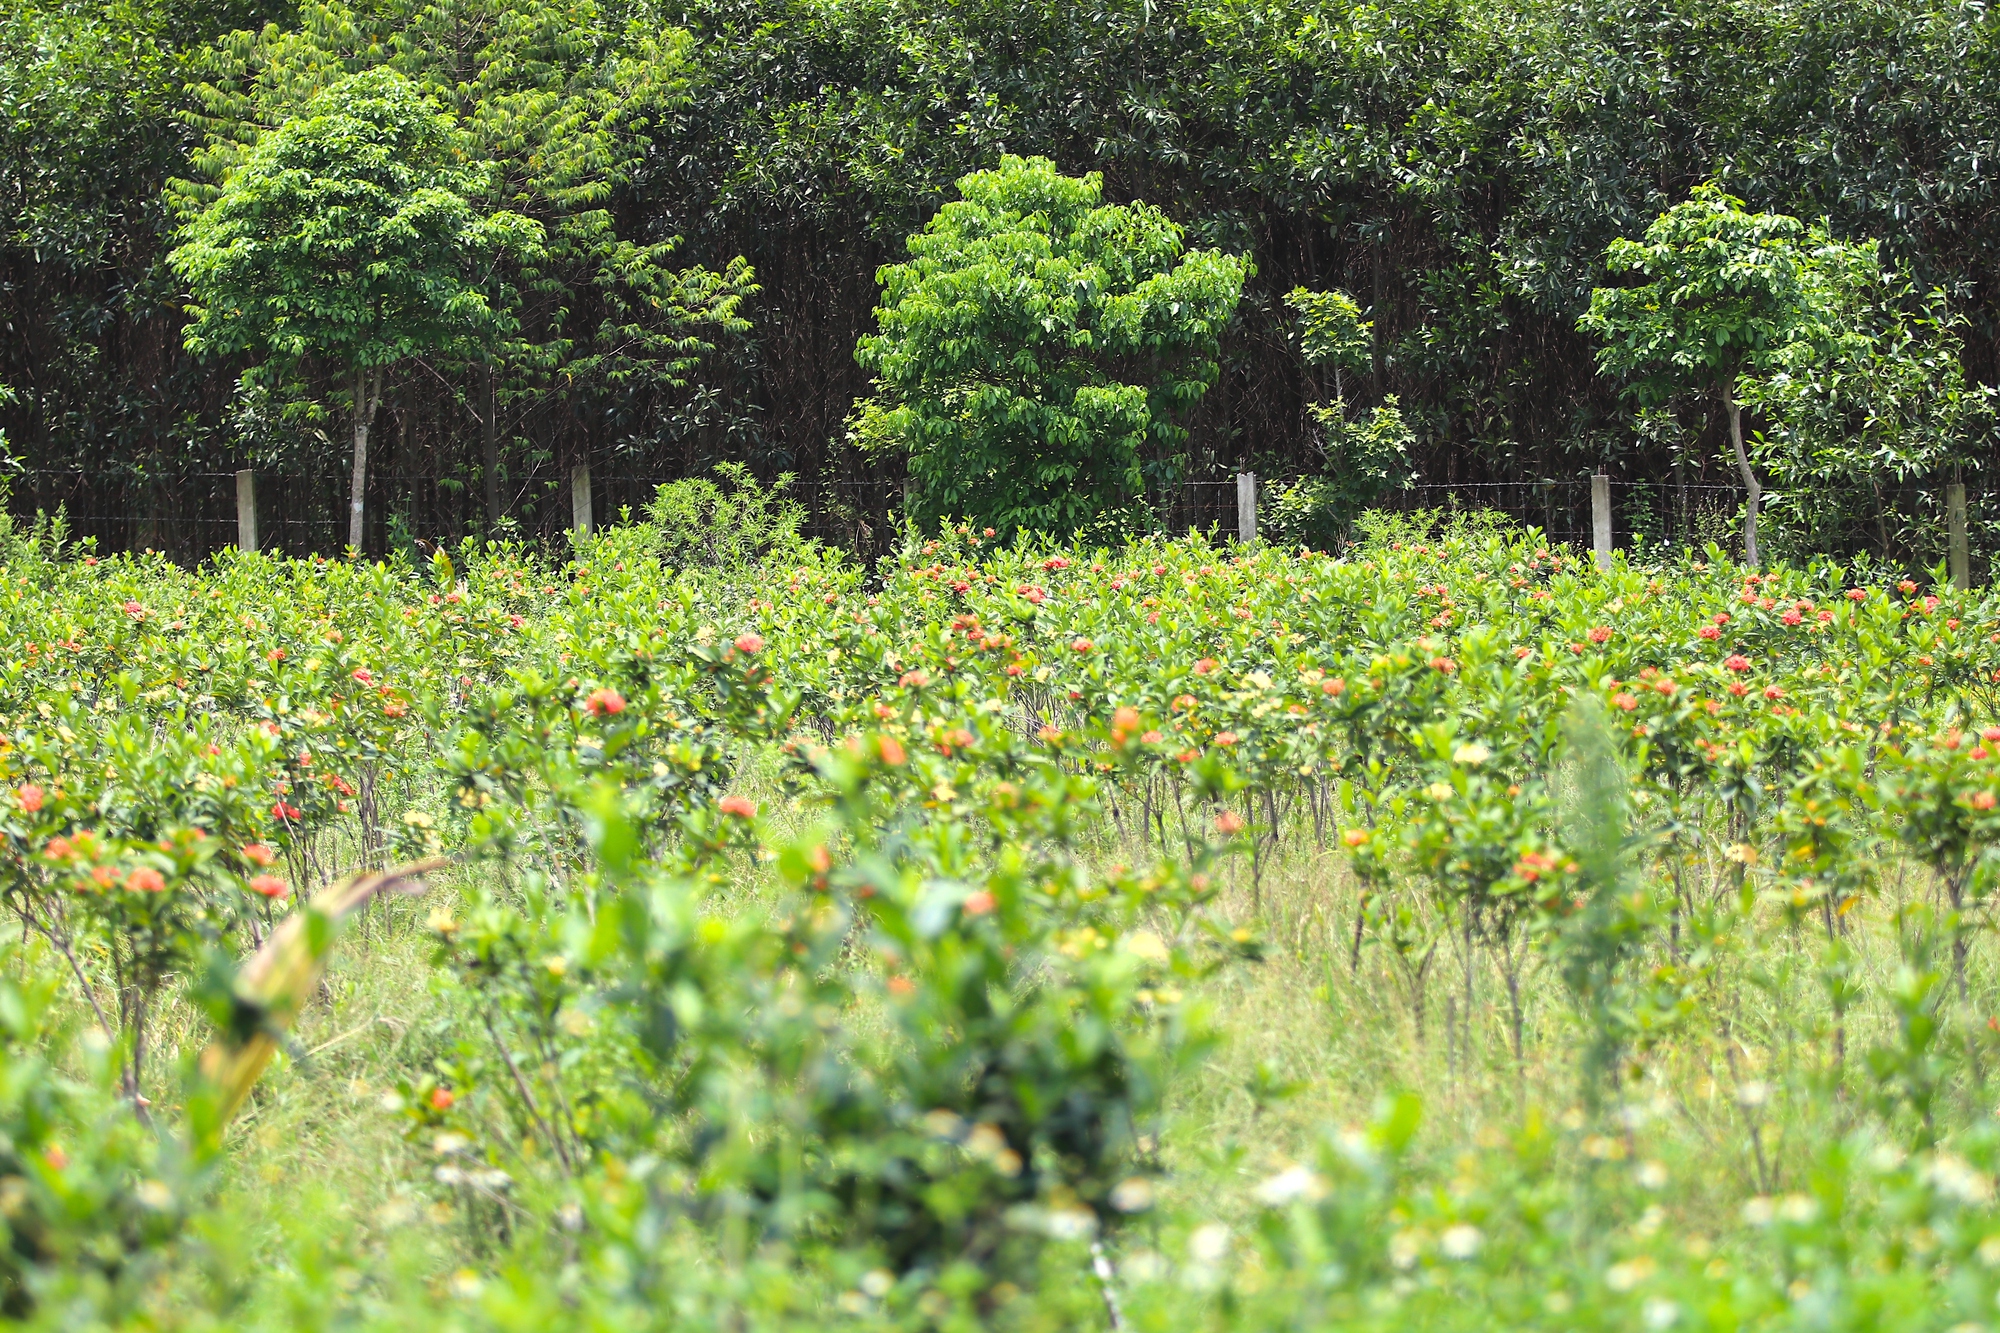 Cận cảnh khu vườn sinh thái thảo dược đẹp như tranh trên núi huyện Yên Thành - Ảnh 21.